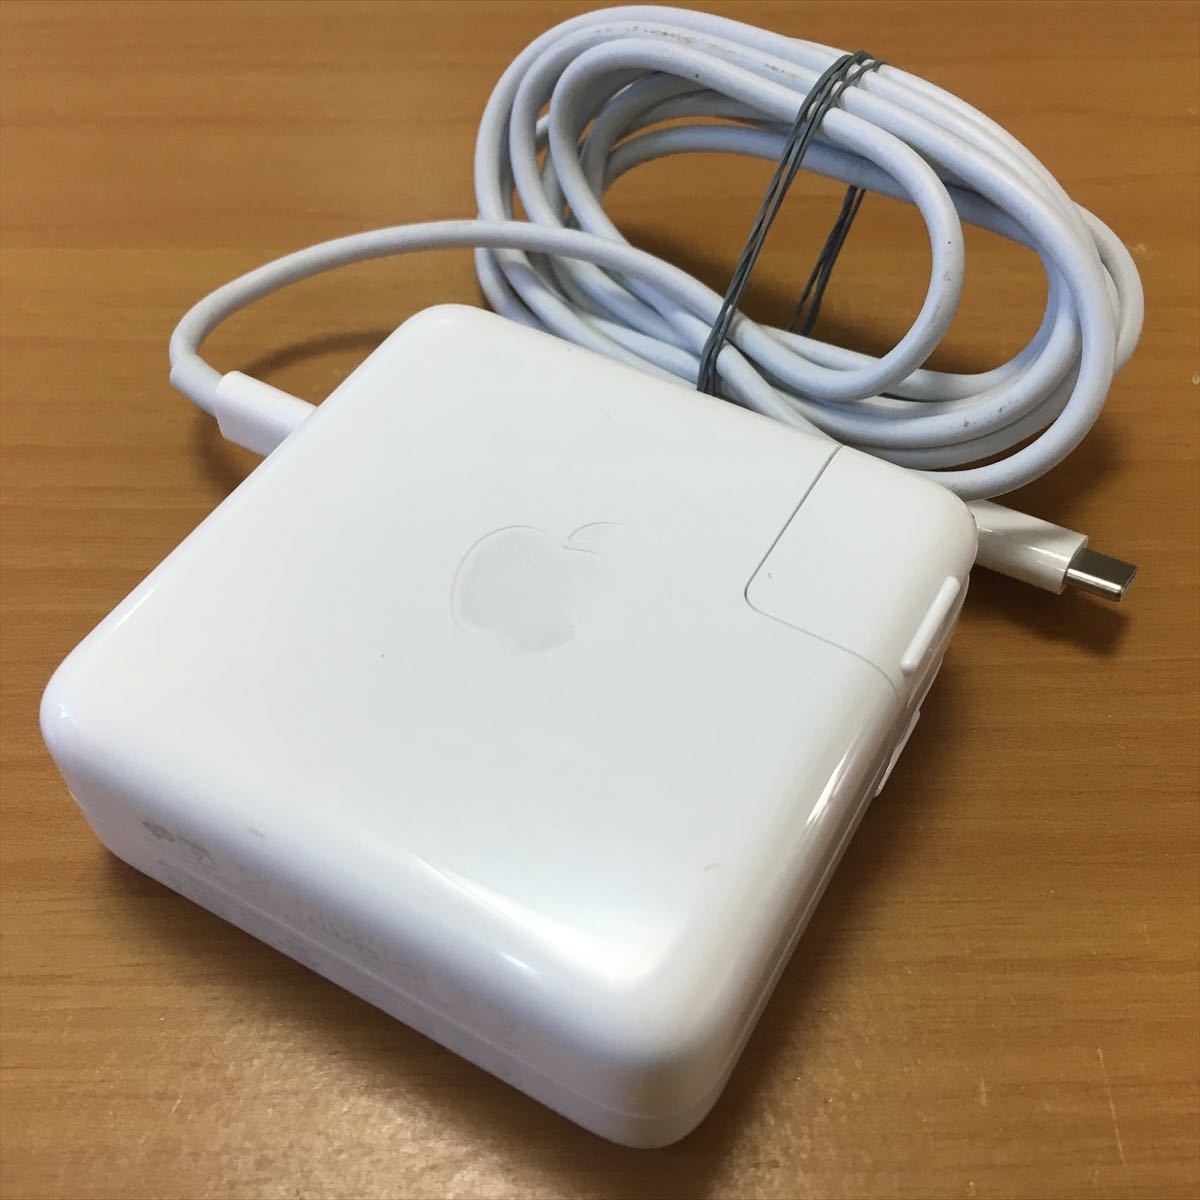 2) 純正品 Apple MacBook Pro用 61W USB-C POWER ADAPTER ACアダプタ A1718_画像2